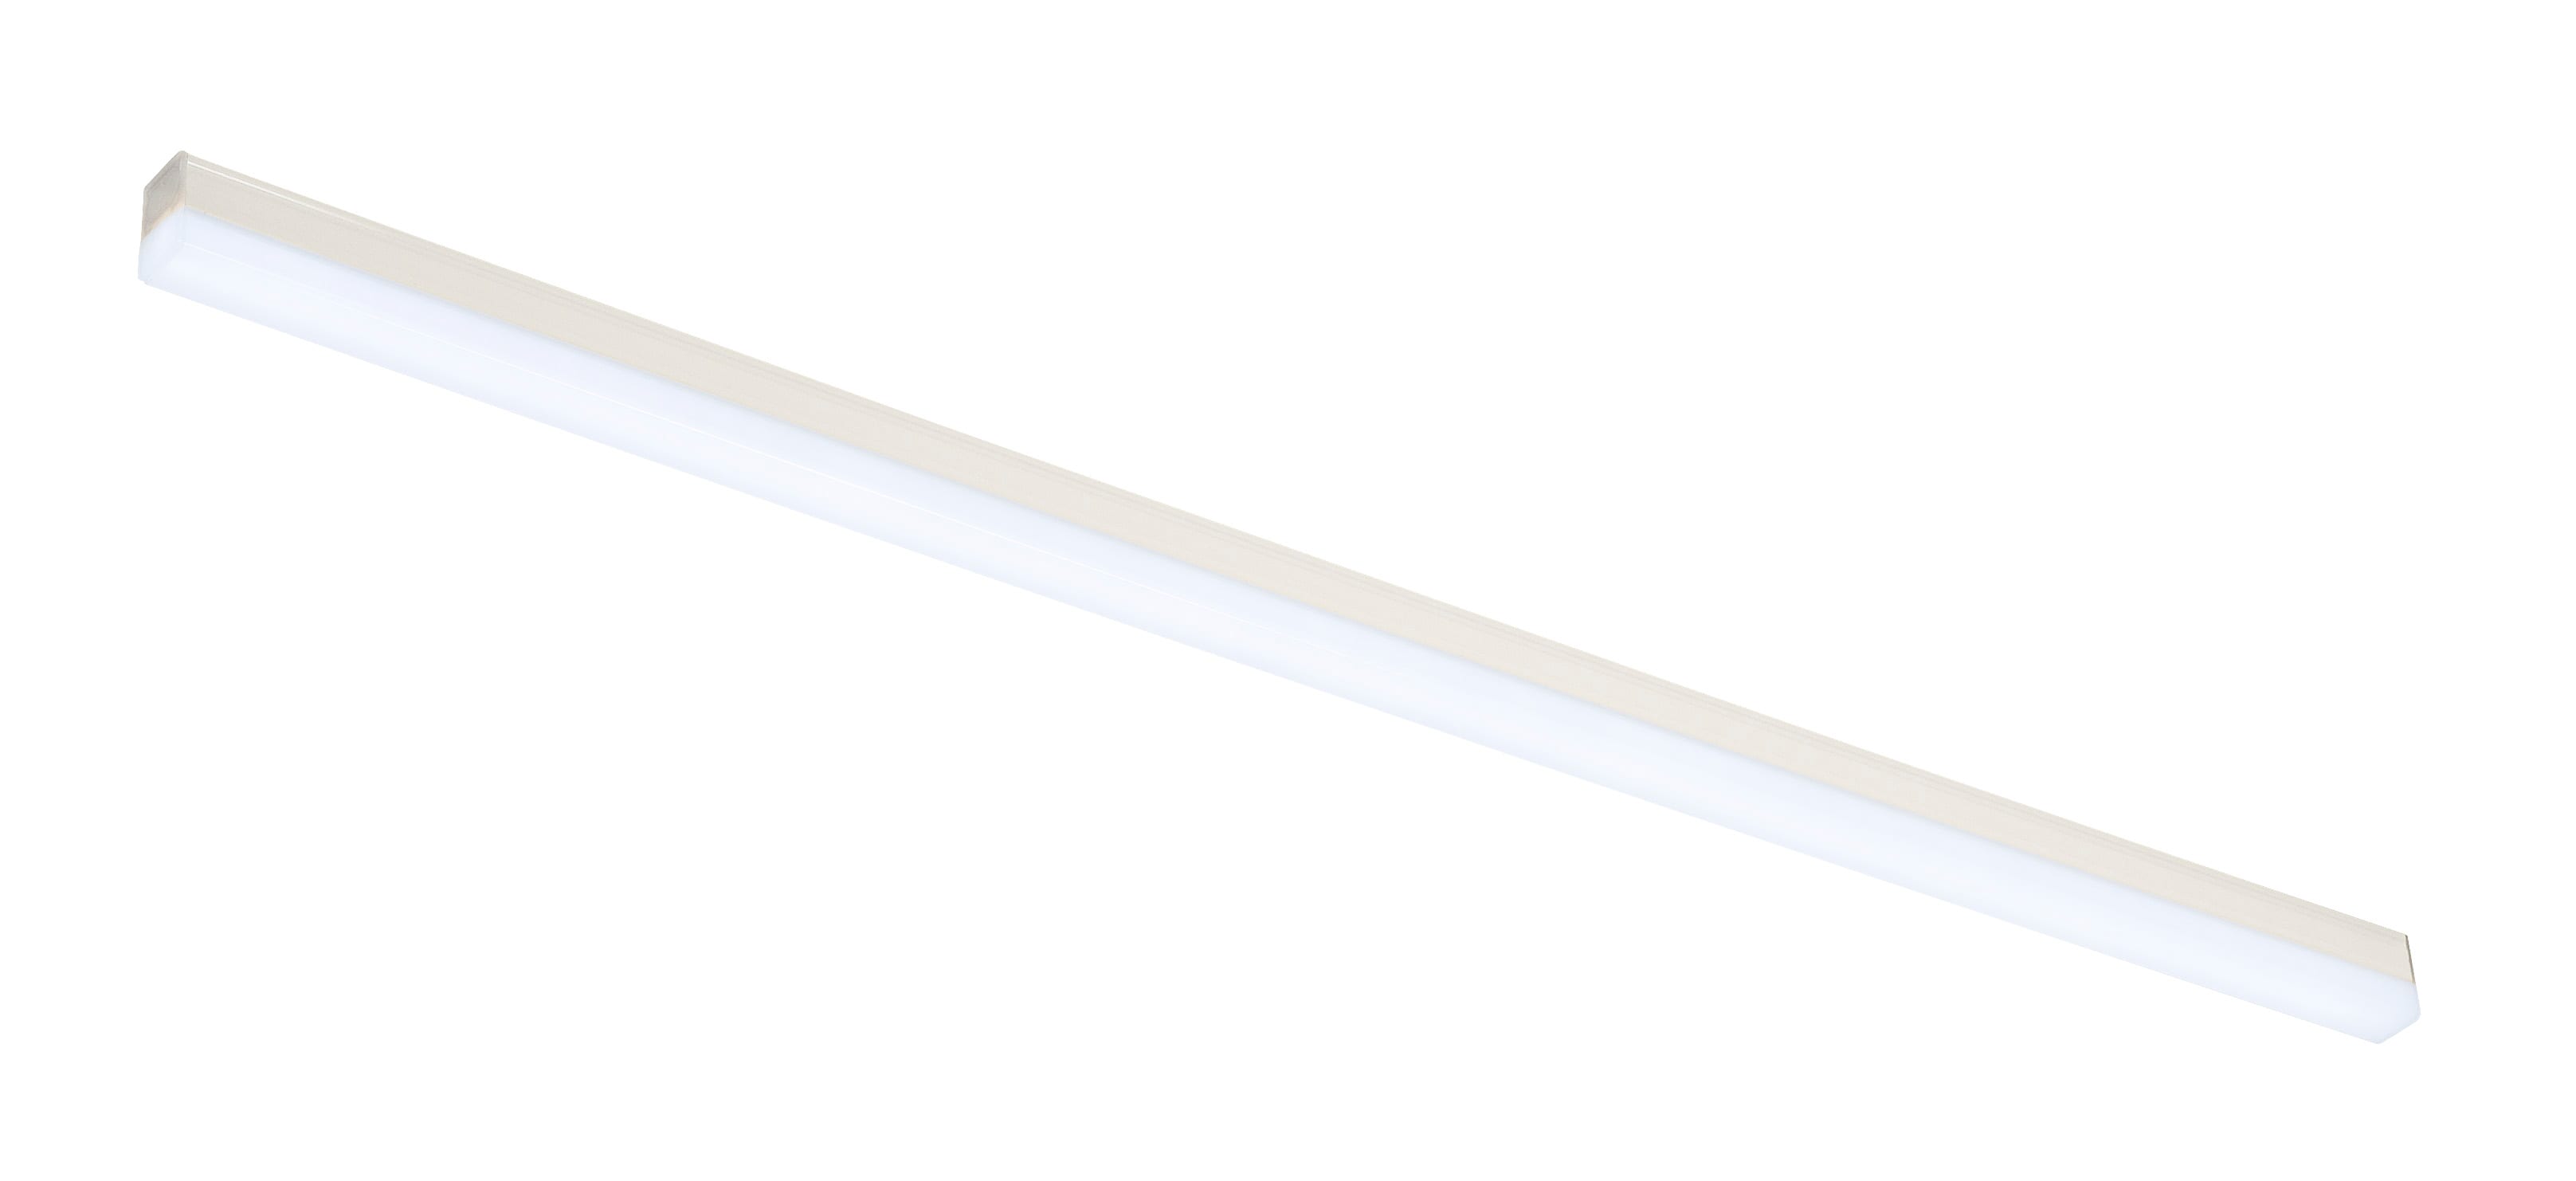 Slv. - BATTEN LED, reglette LED, interieur, 87,5 cm, blanc mat, LED, 12,4W, 4000K